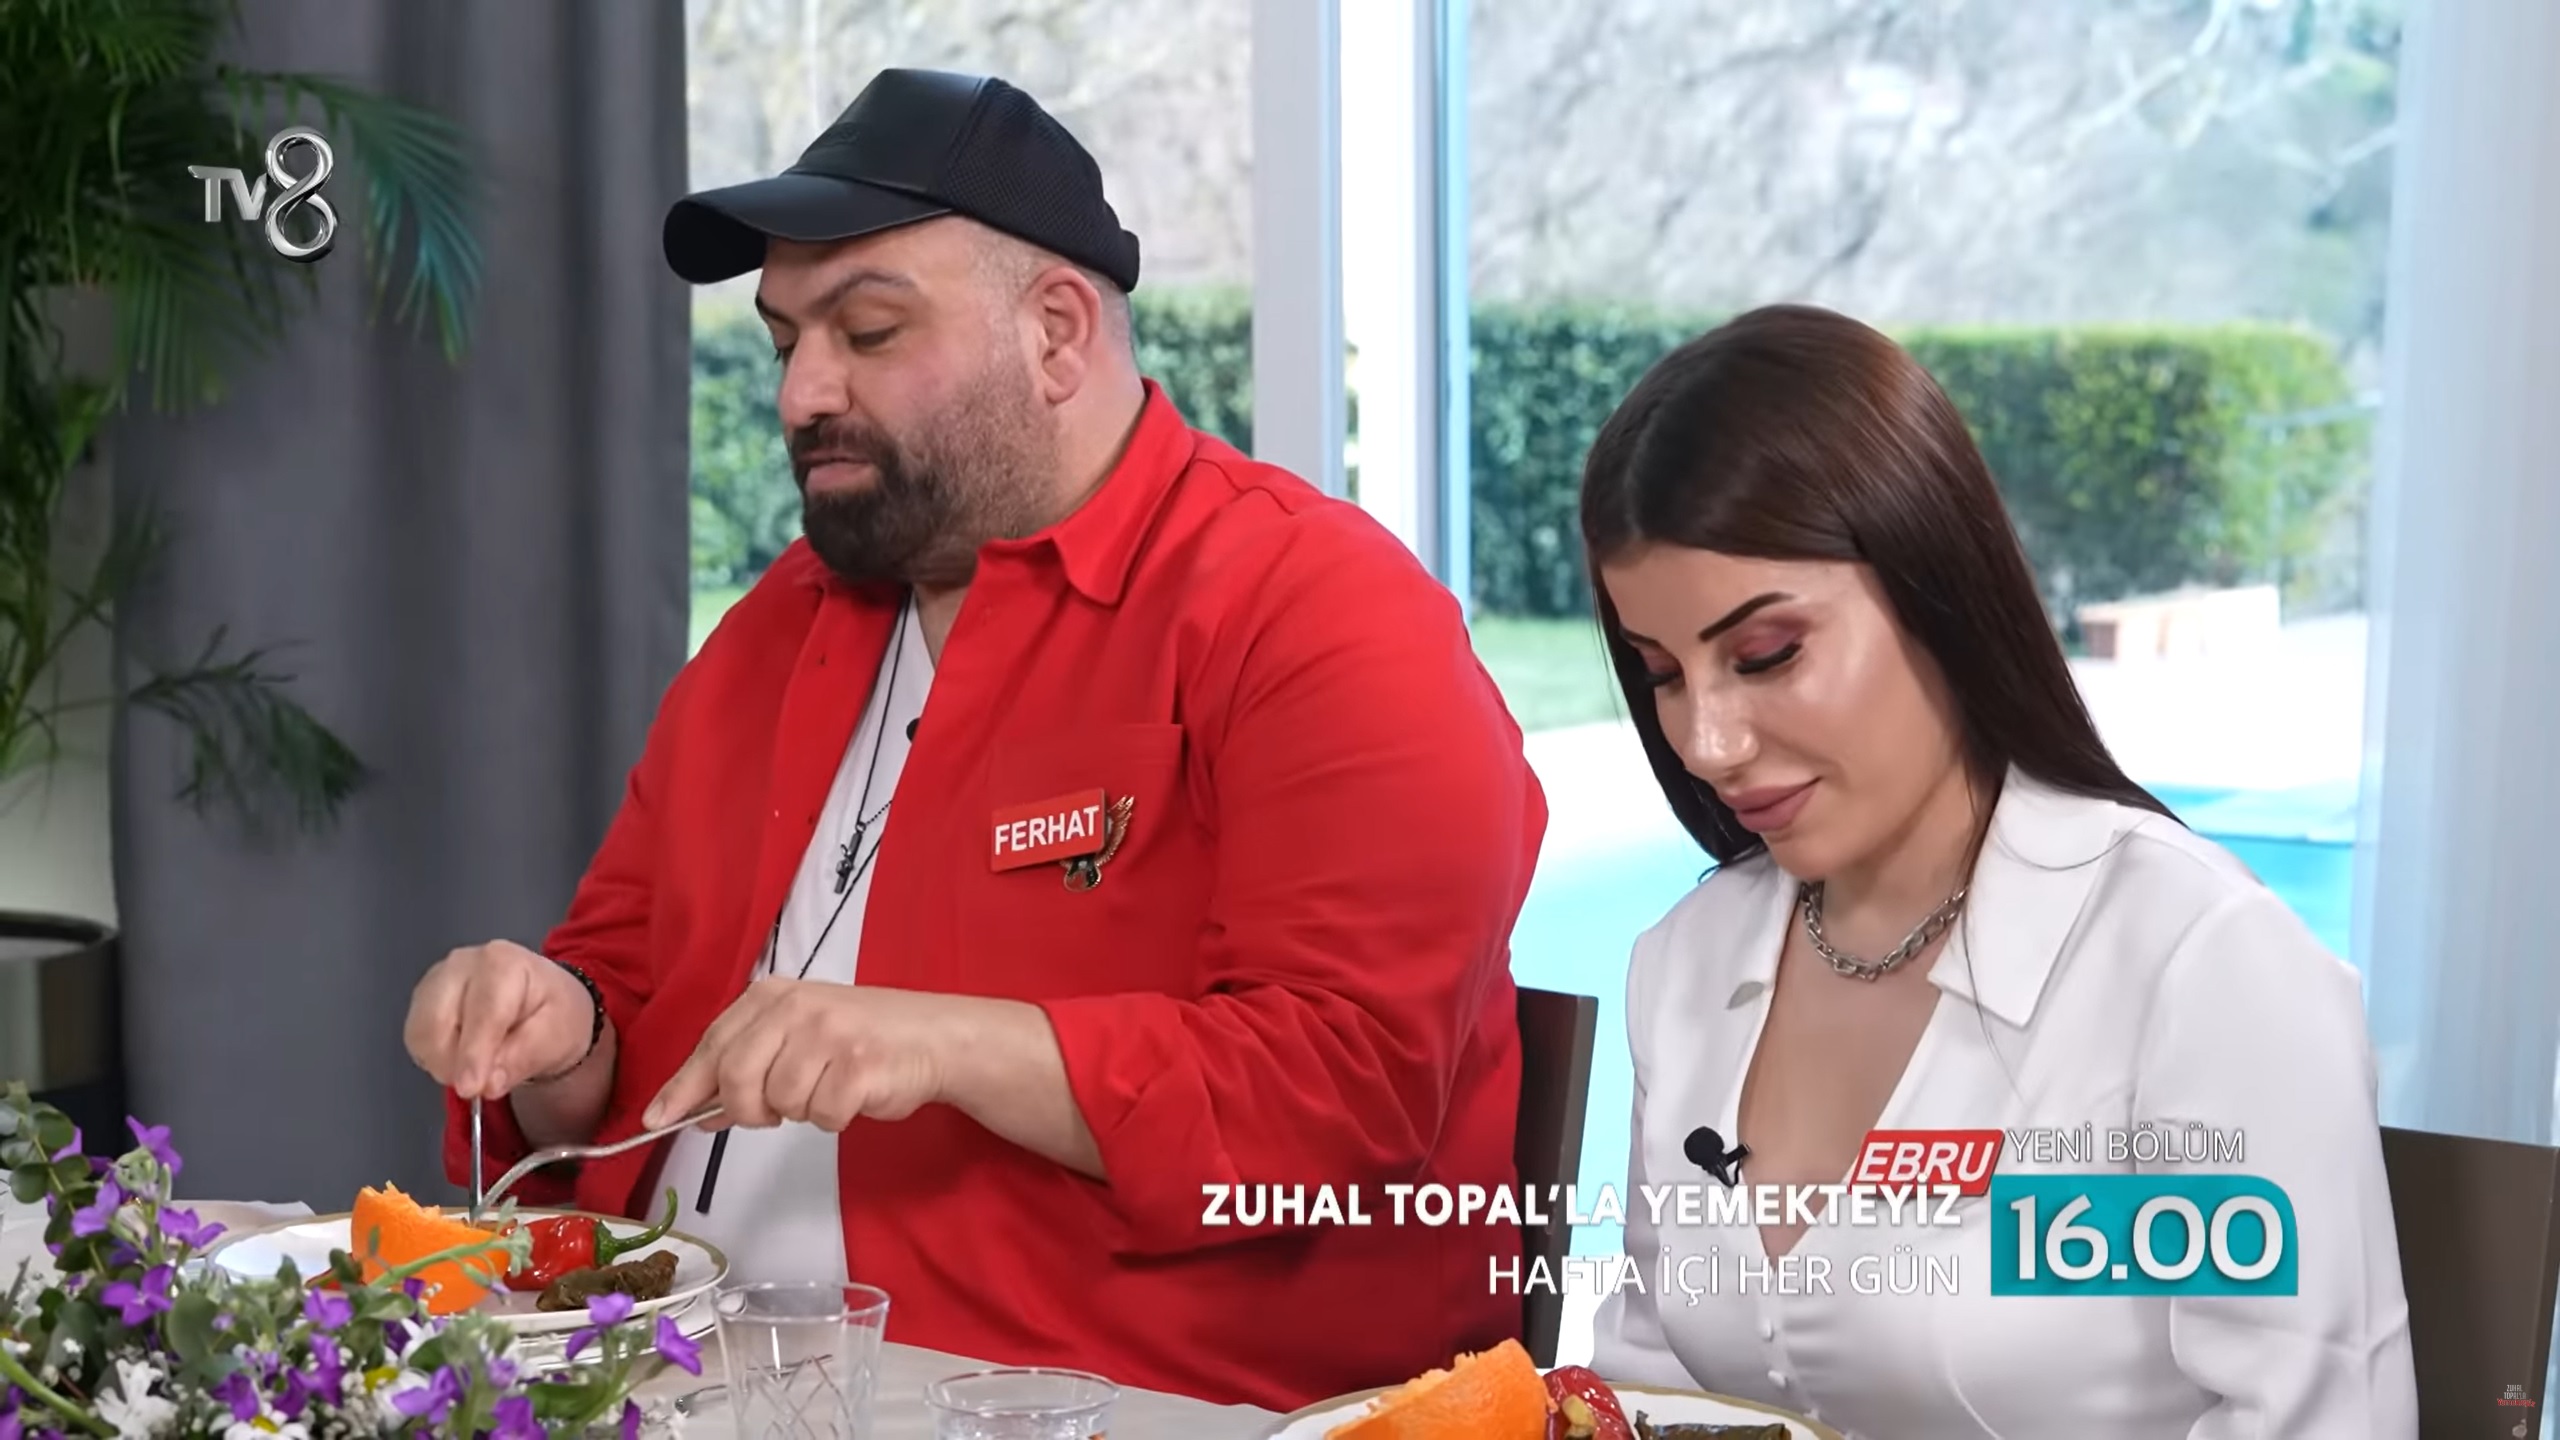 Zuhal Topal'la Yemekteyiz Ferhat (1-5 Mayıs) kimdir?